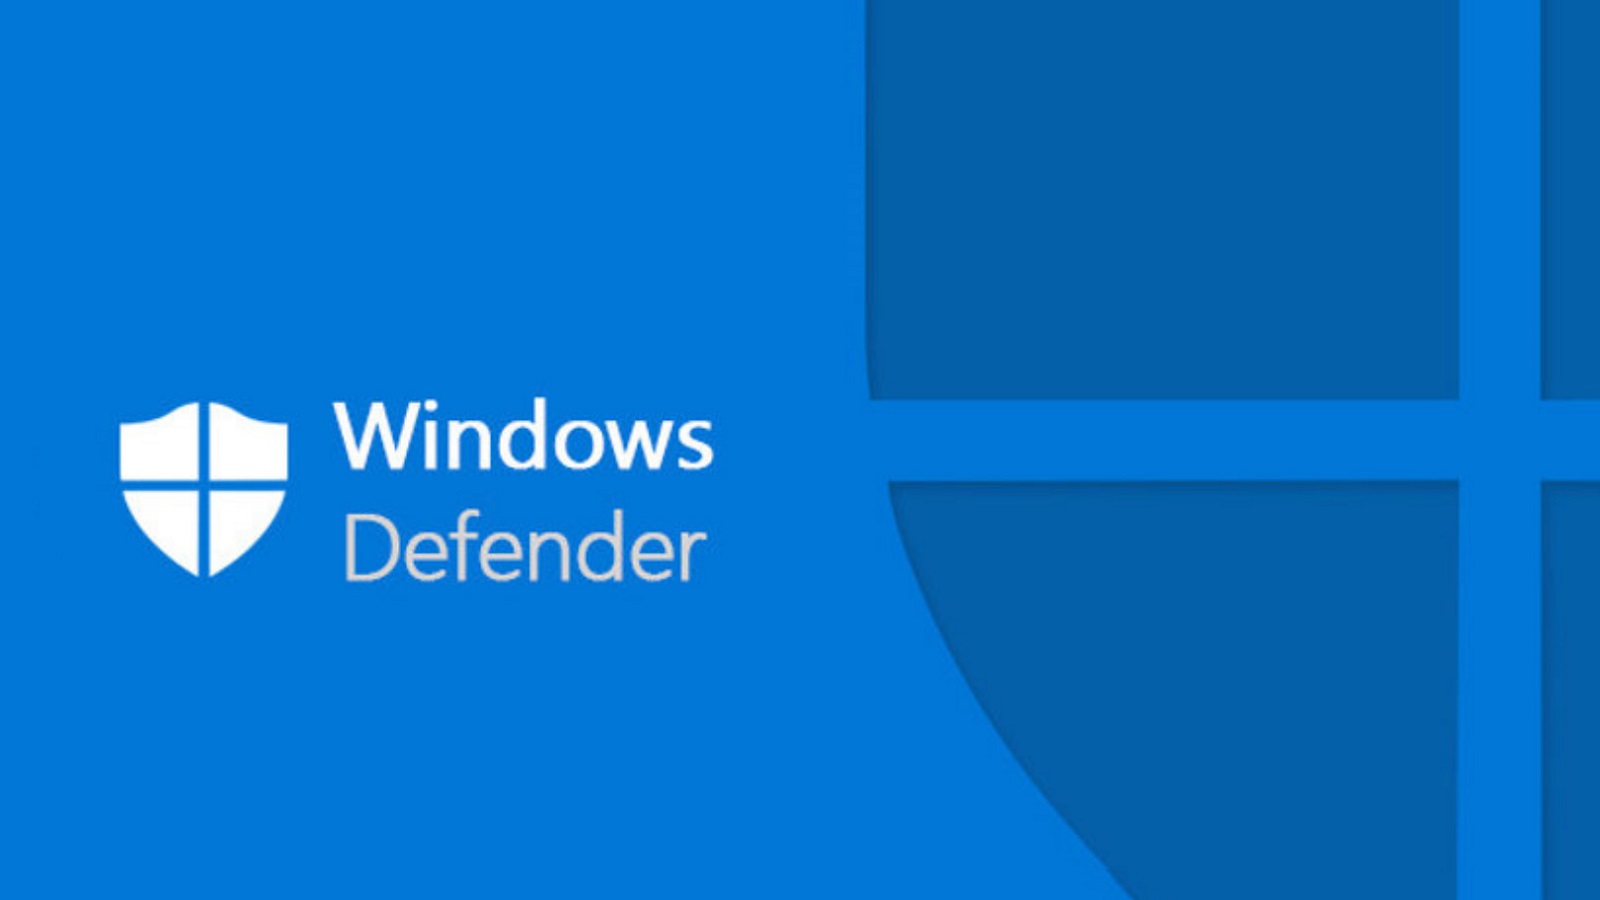 Pour Windows Defender, CCleaner est une app indésirable